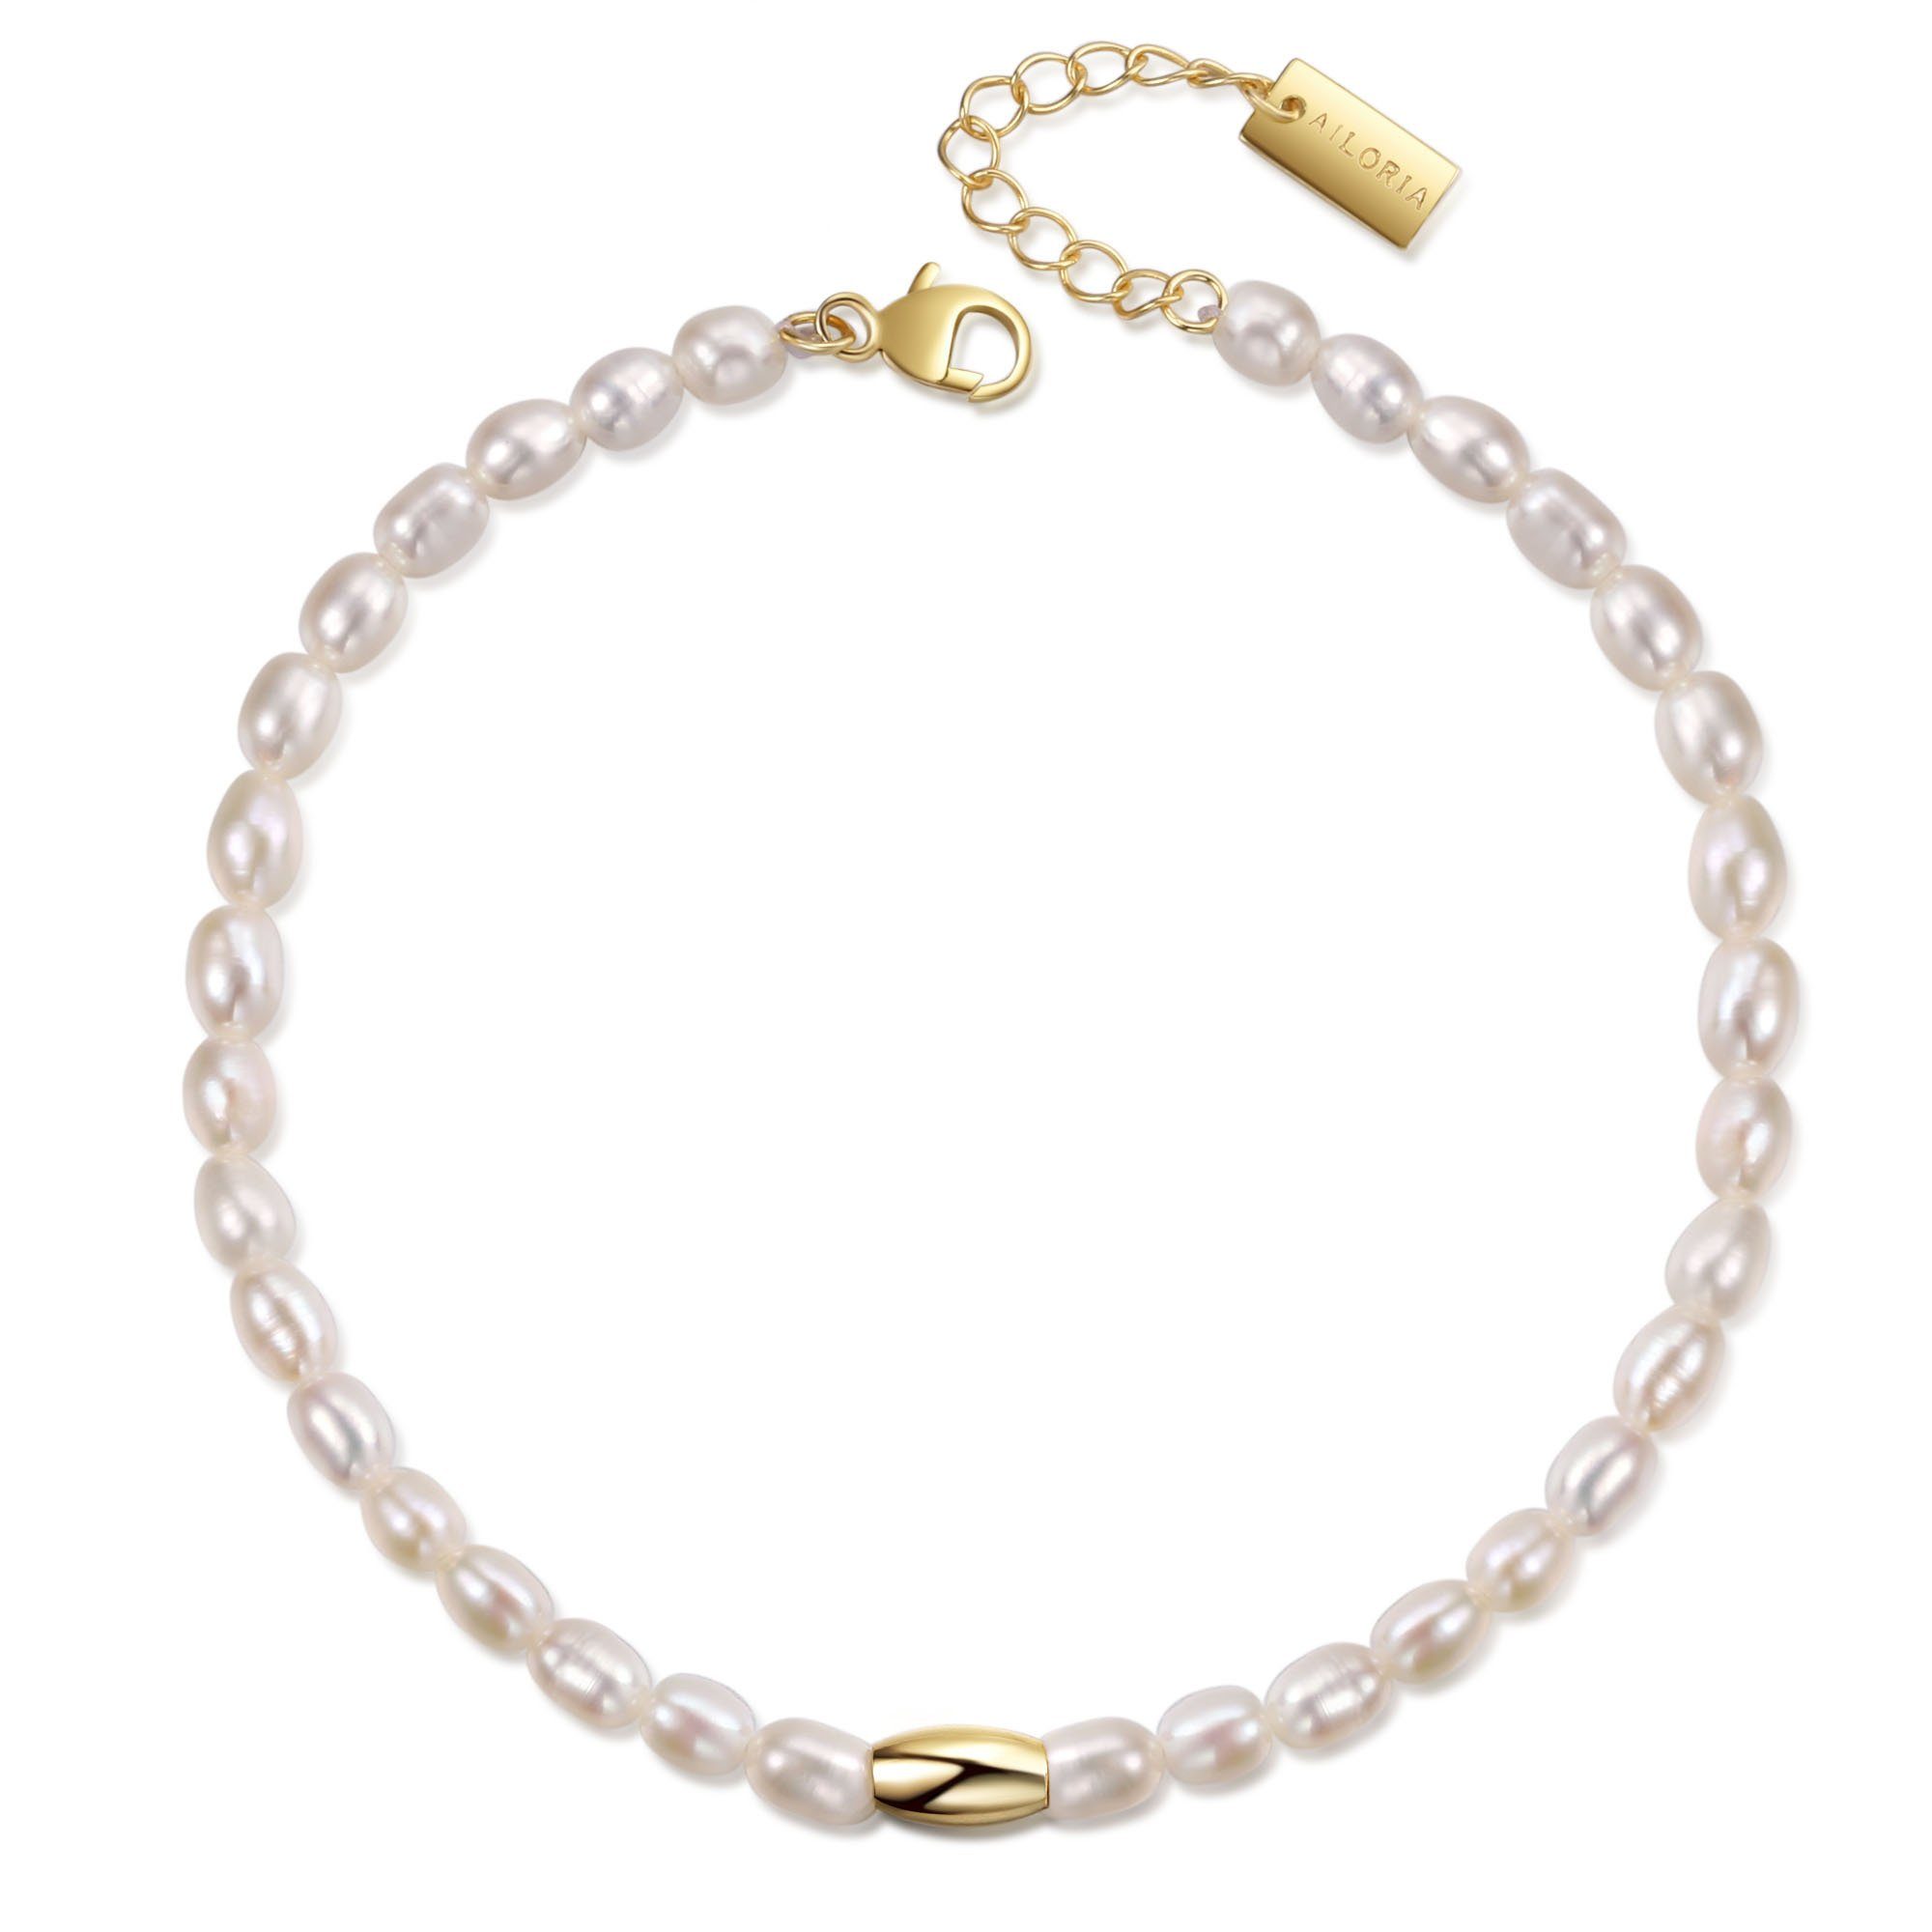 AILORIA Armband armband gold/weiße SANGO Armband gold/weiße perle, Perle